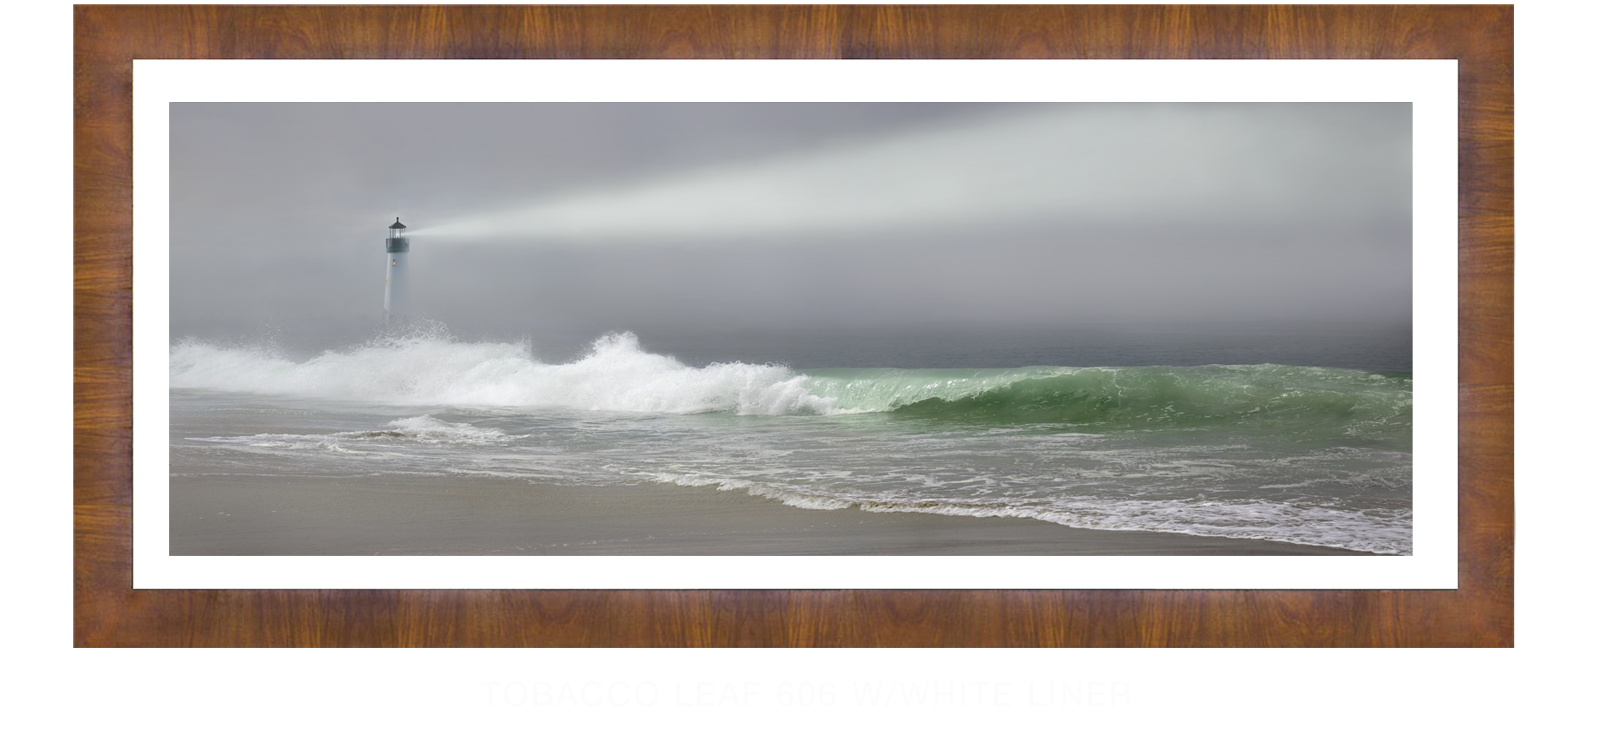 24Lighthouse Tobacco Leaf 606 w_Wht Liner T